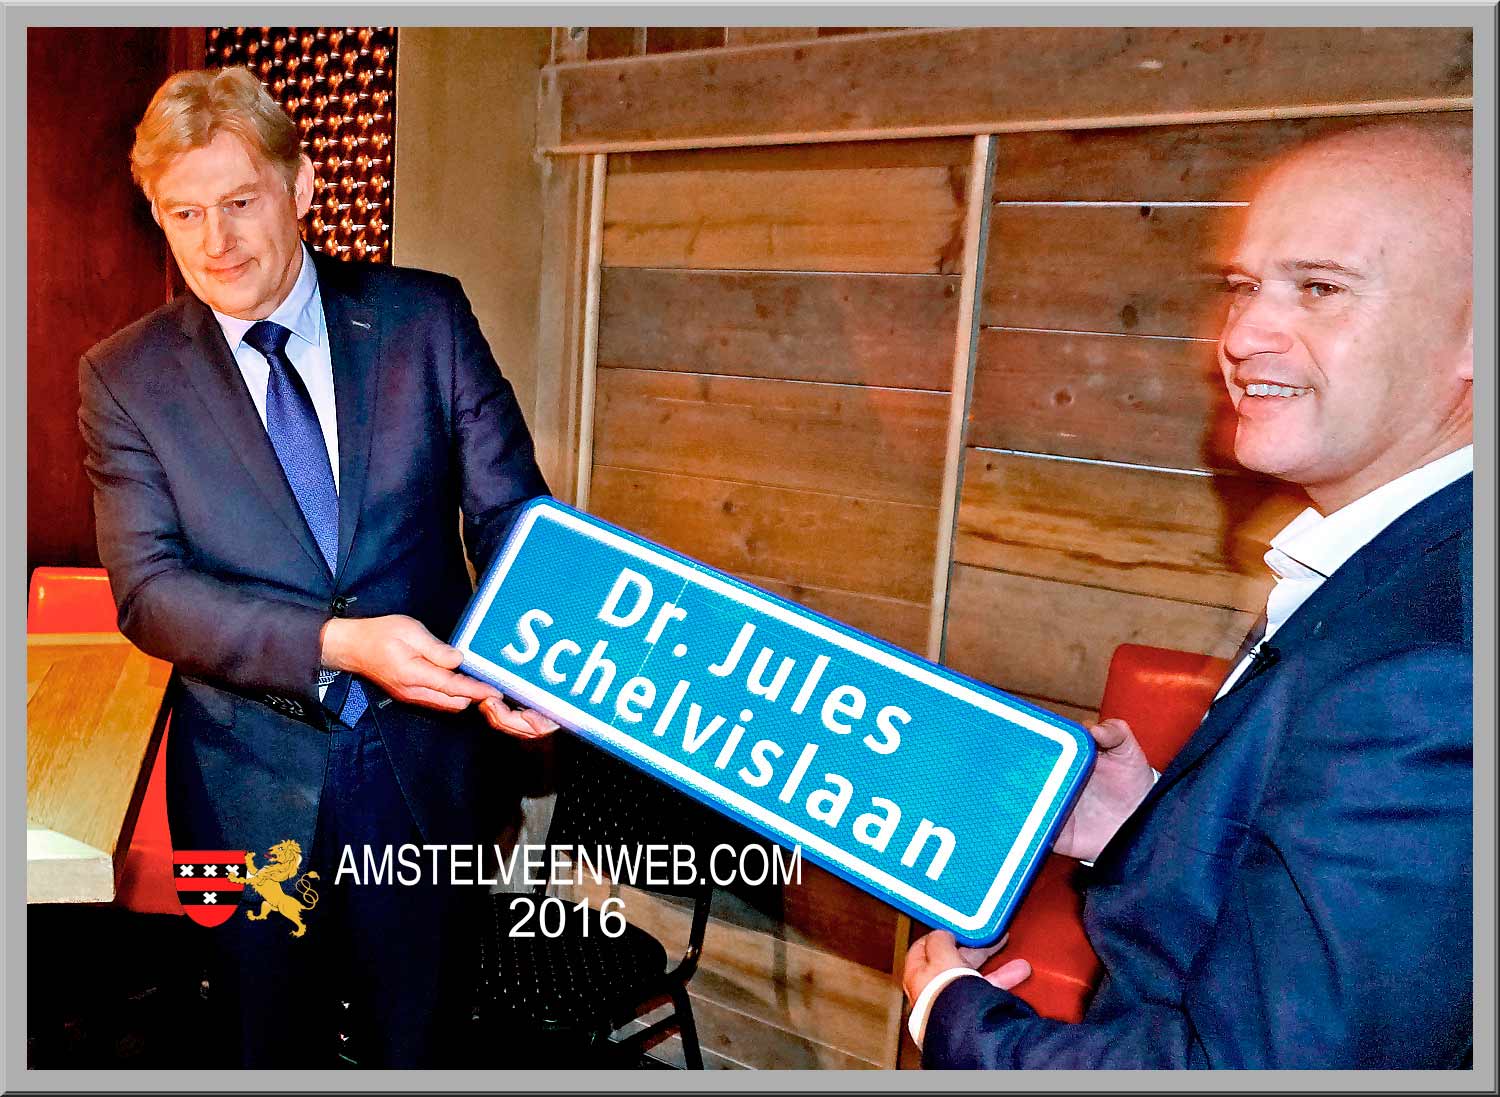 Dr. Jules Schelvislaan